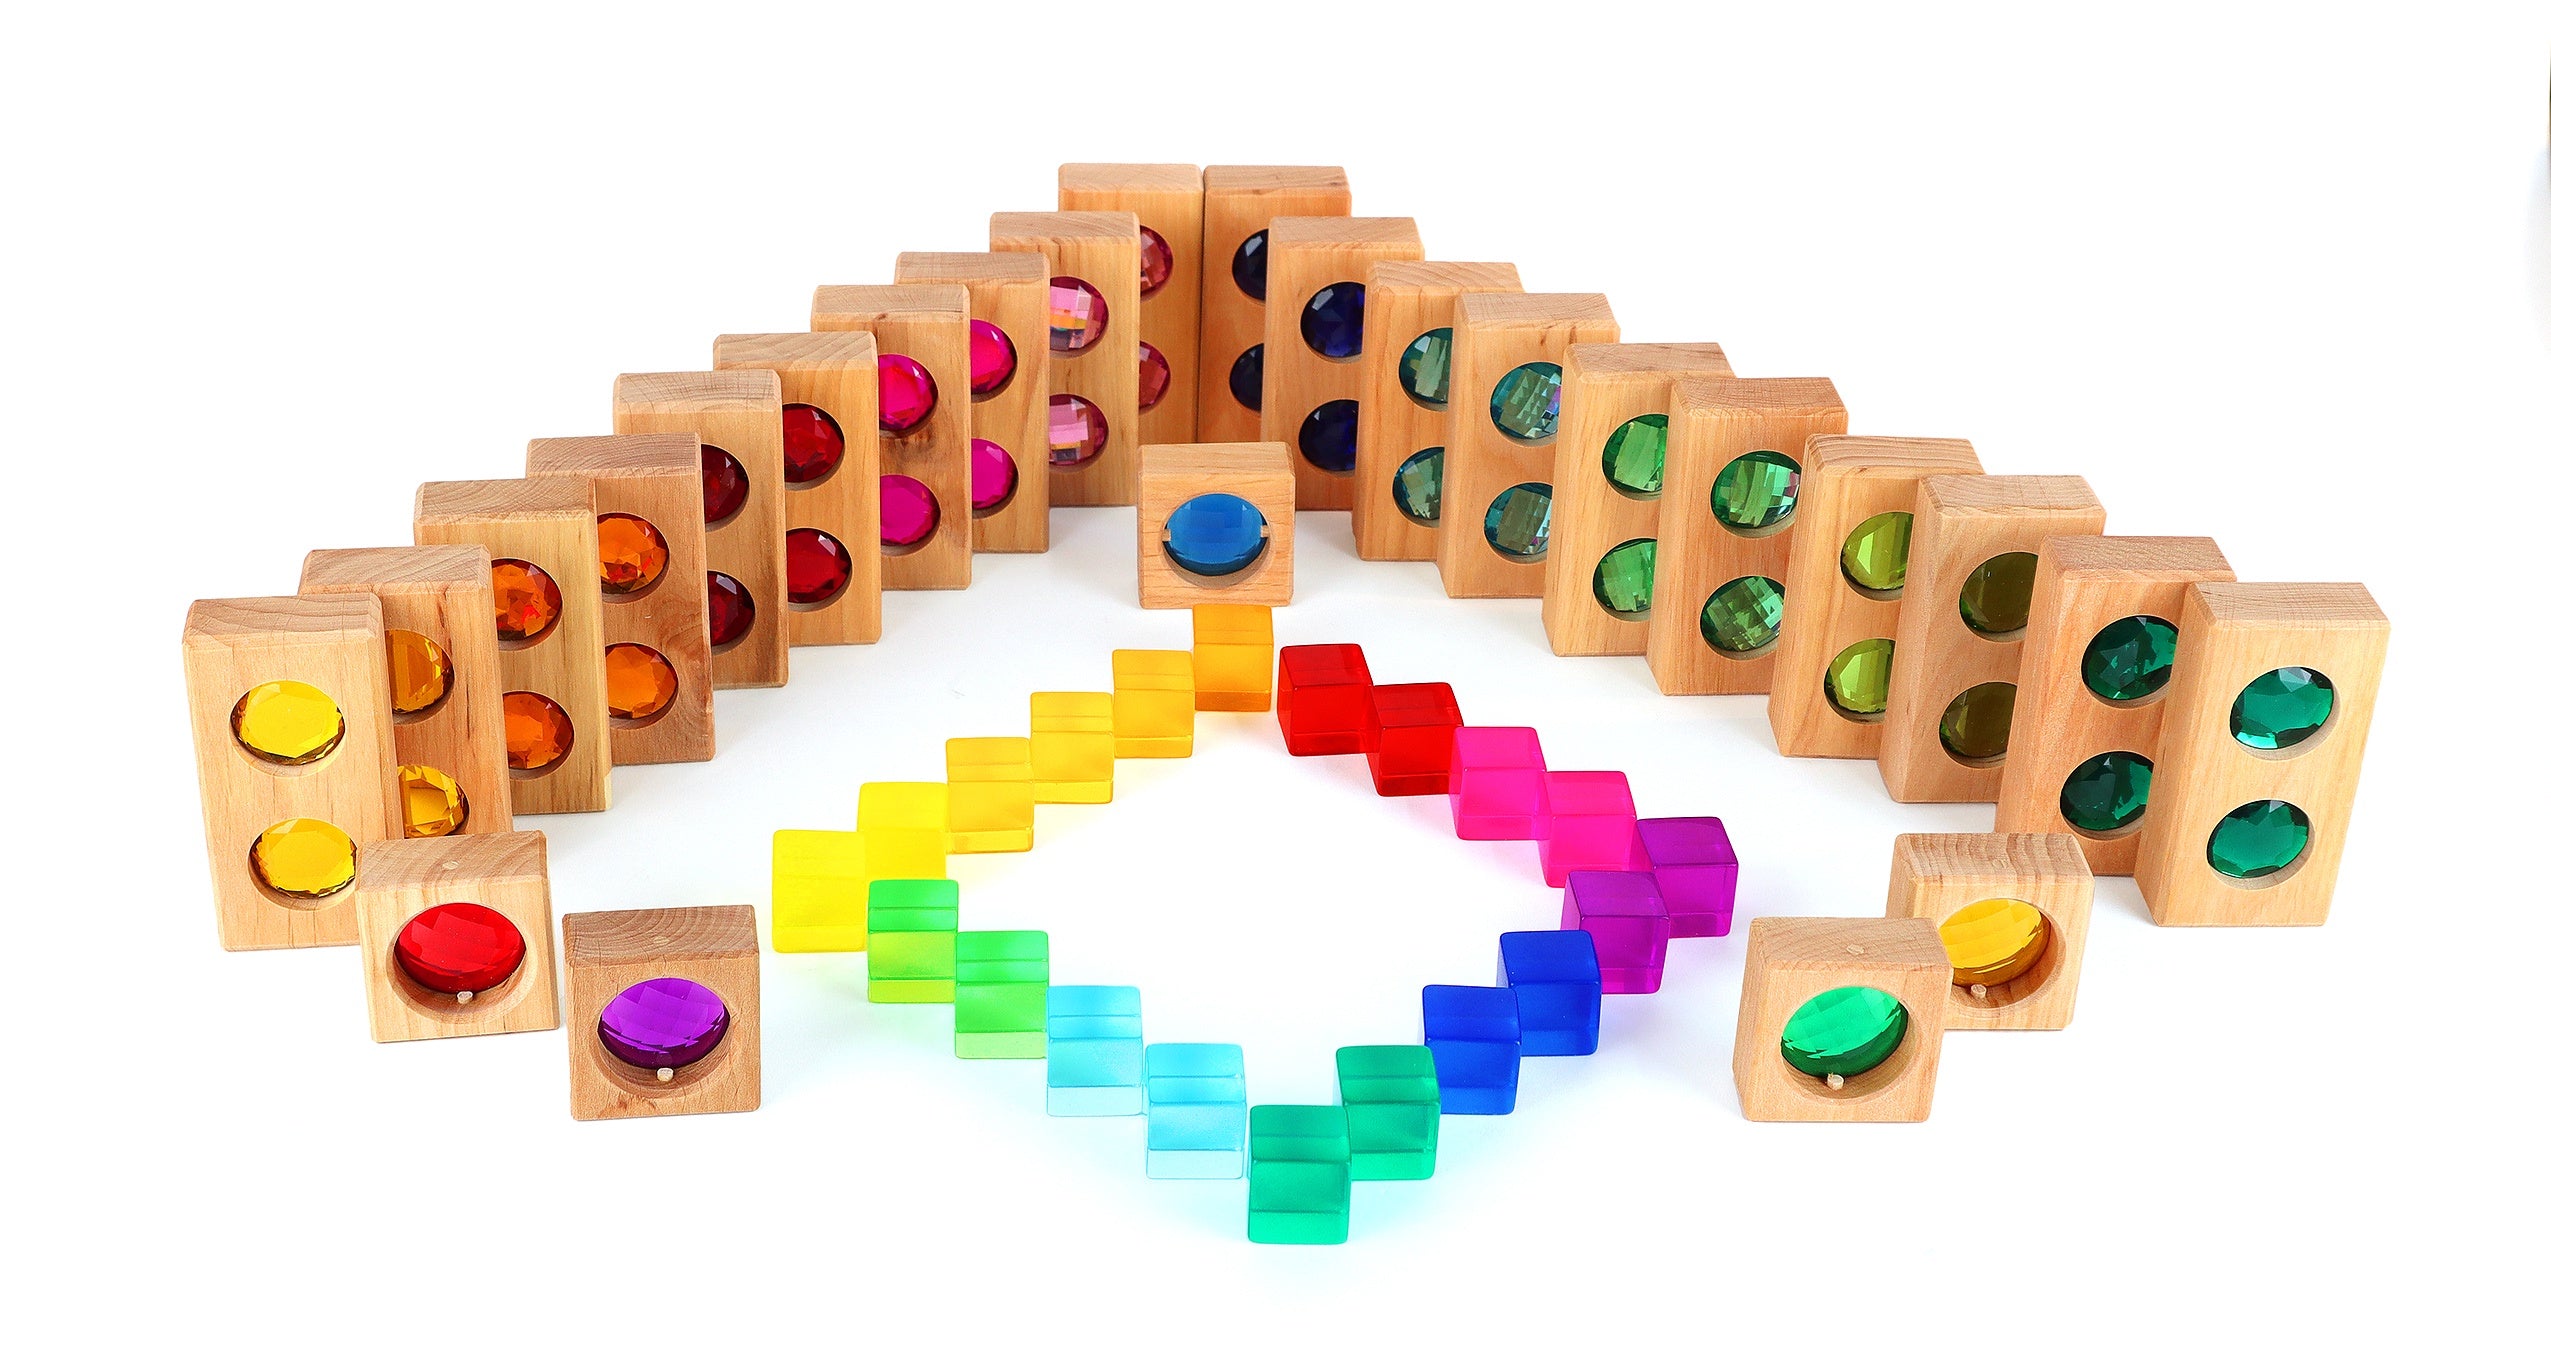 Bauspiel - Colour Track Wooden Blocks with Lucite Cubes - 45 pcs